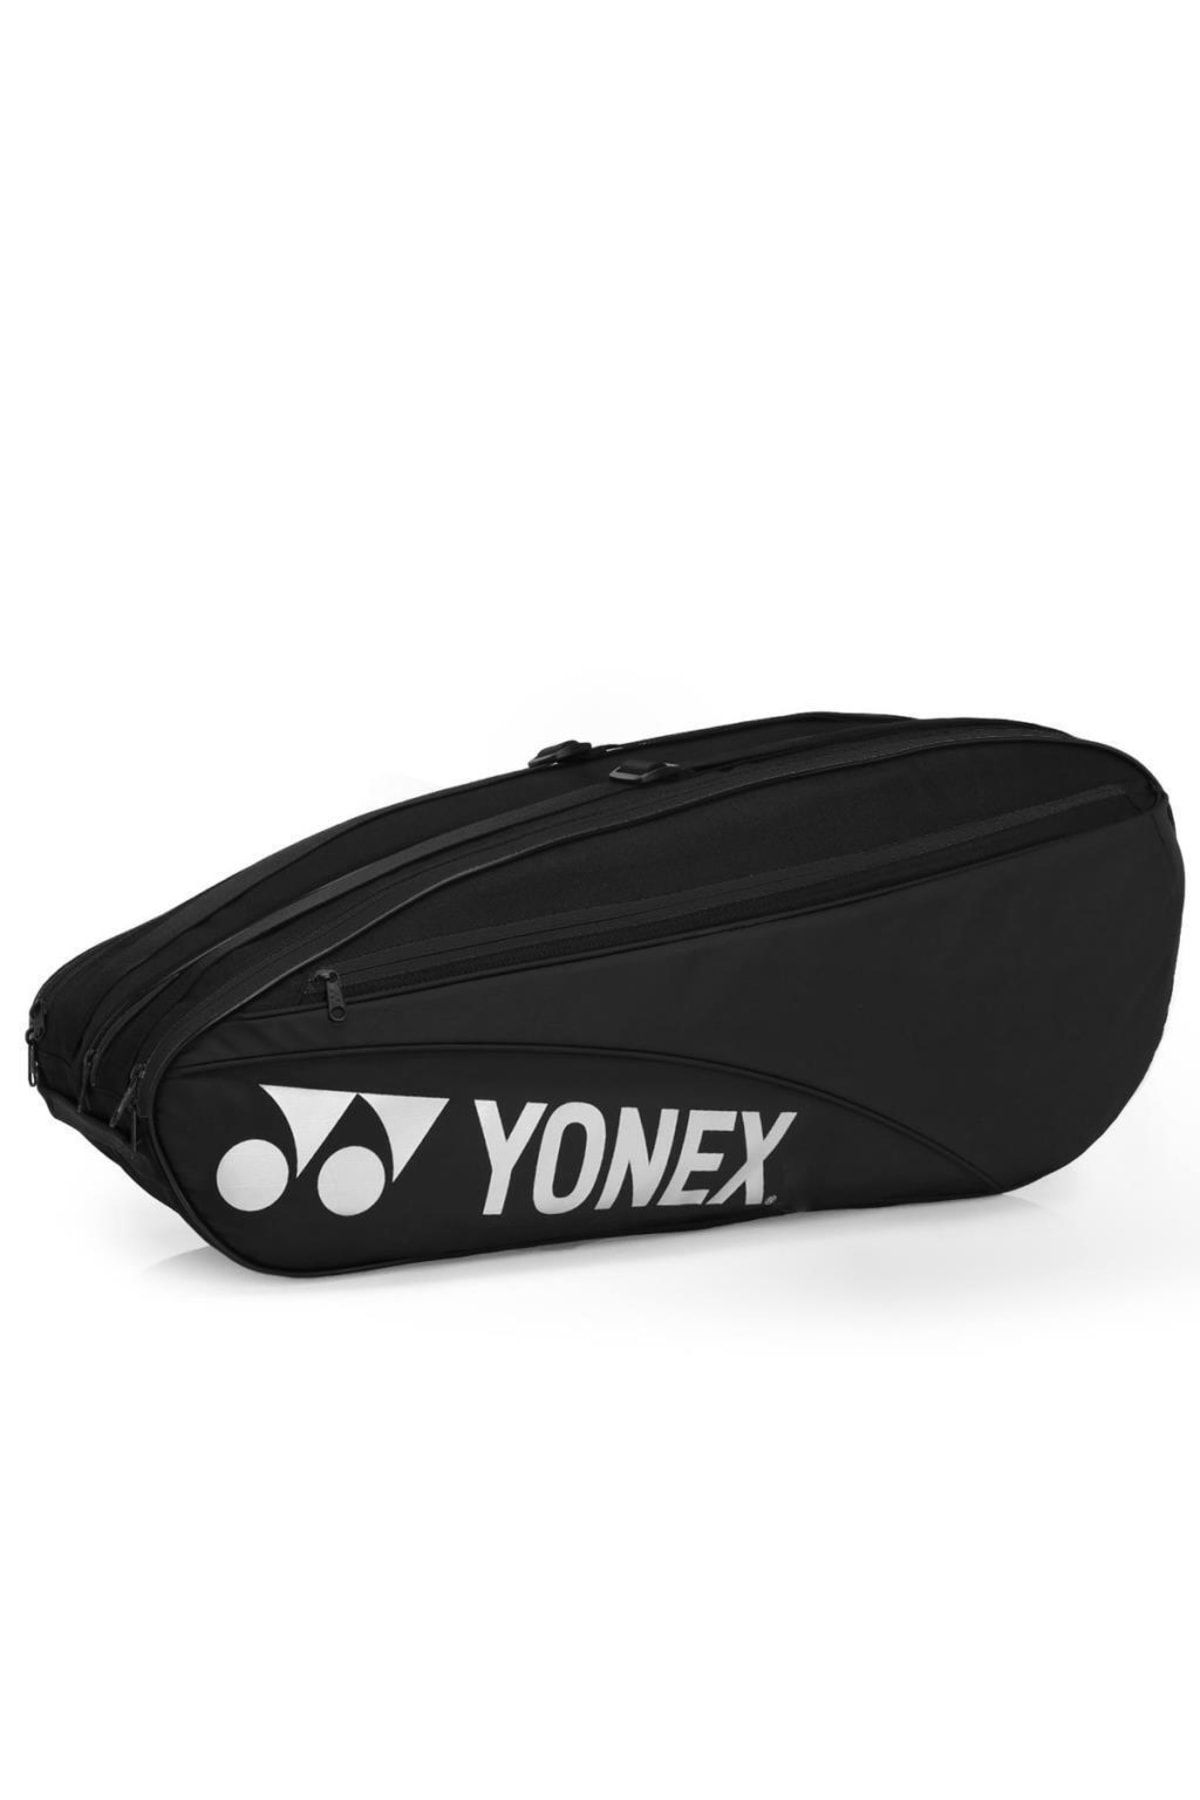 Yonex Pro 42326 Siyah Tenis Çantası 6 Raketli Ayakkabı Bölmeli